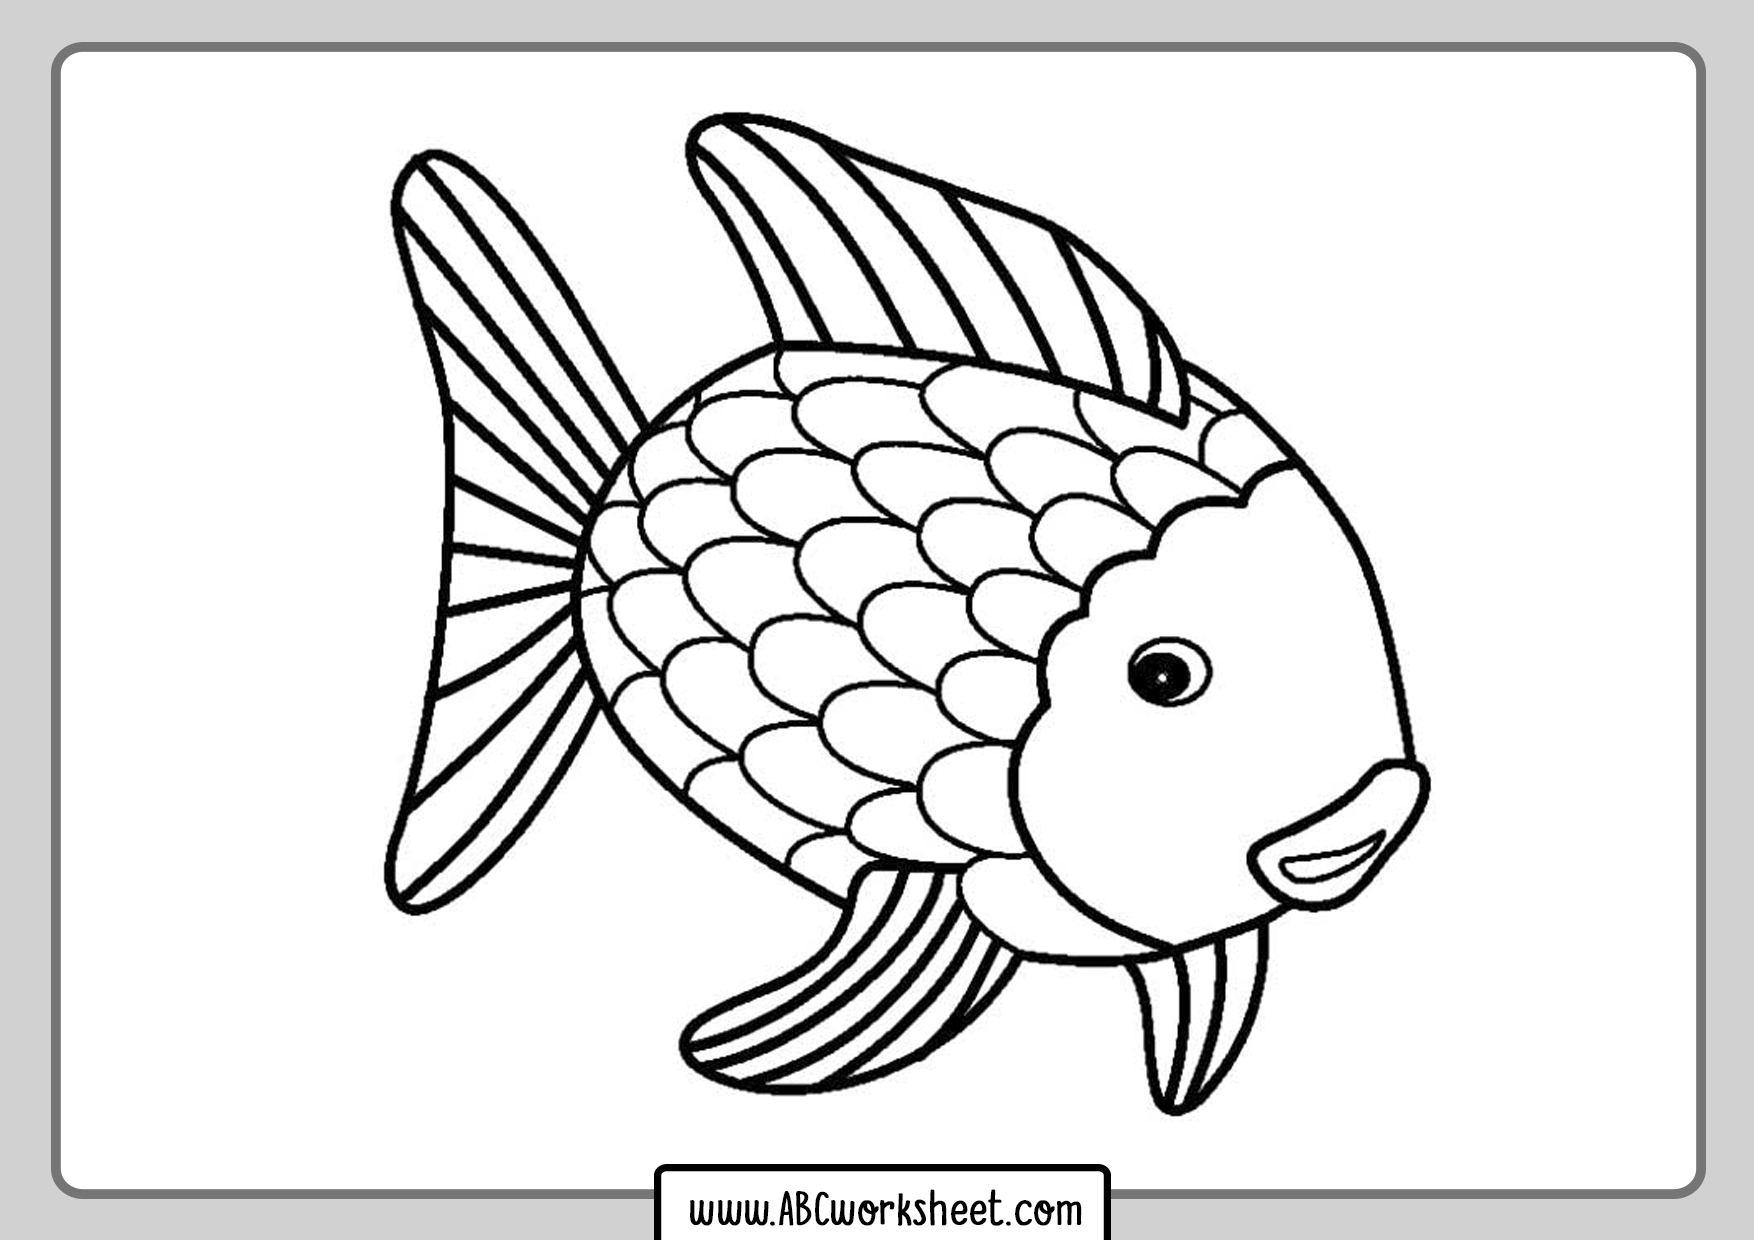 Раскраска рыбки для детей 5 6 лет. Рыбки для раскрашивания. Рыба раскраска. Рыба раскраска для детей. Рыбка раскраска для детей.